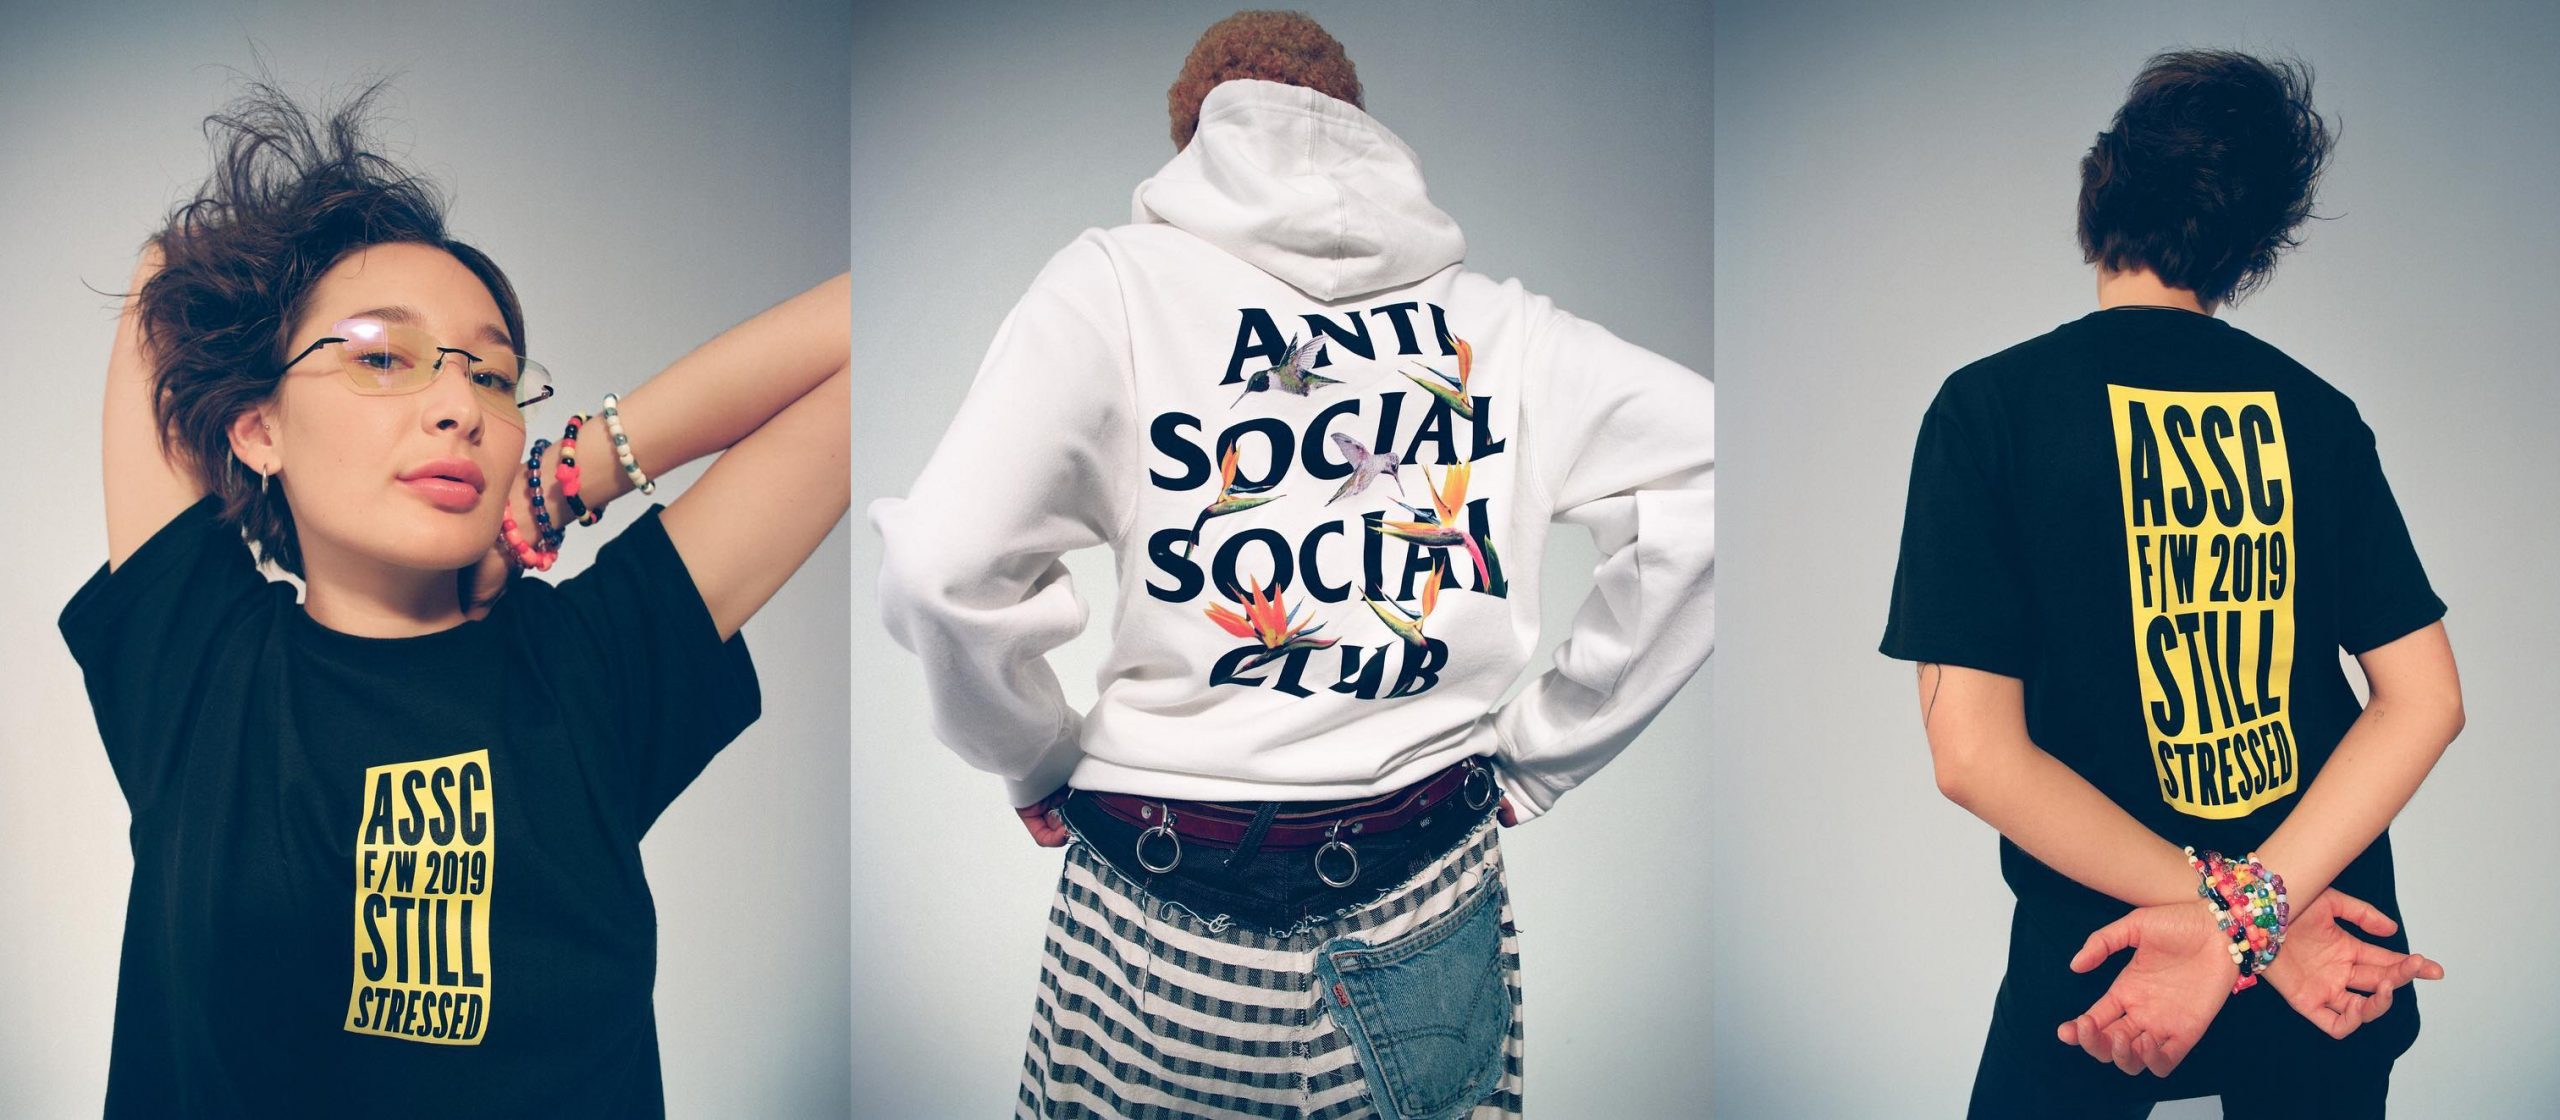 10月19日 (日本時間 23:59)発売開始 anti social social club X 